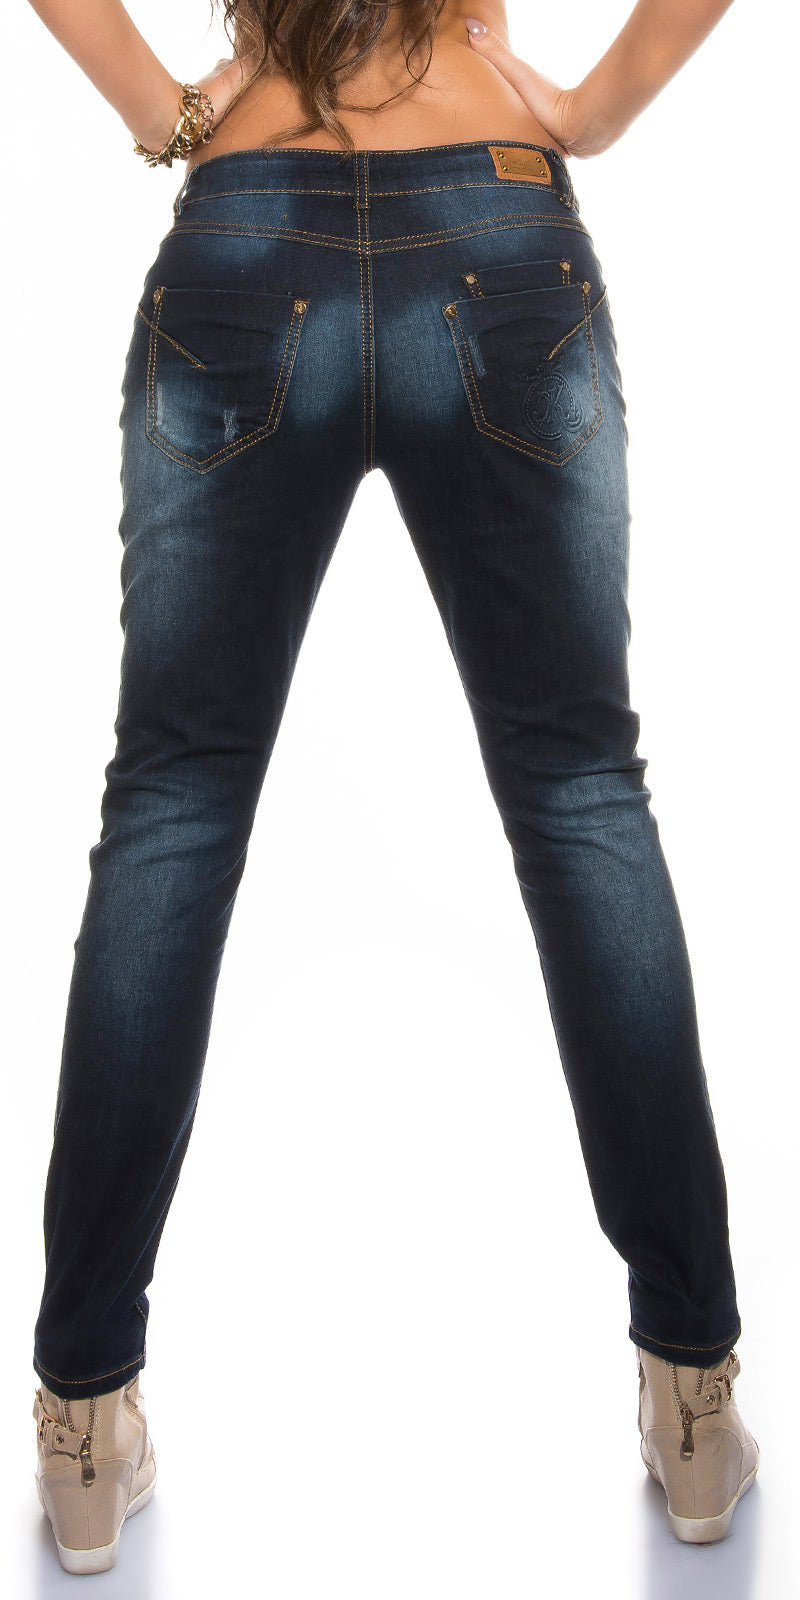 Jeans 0000K600-168 - solo taglia L